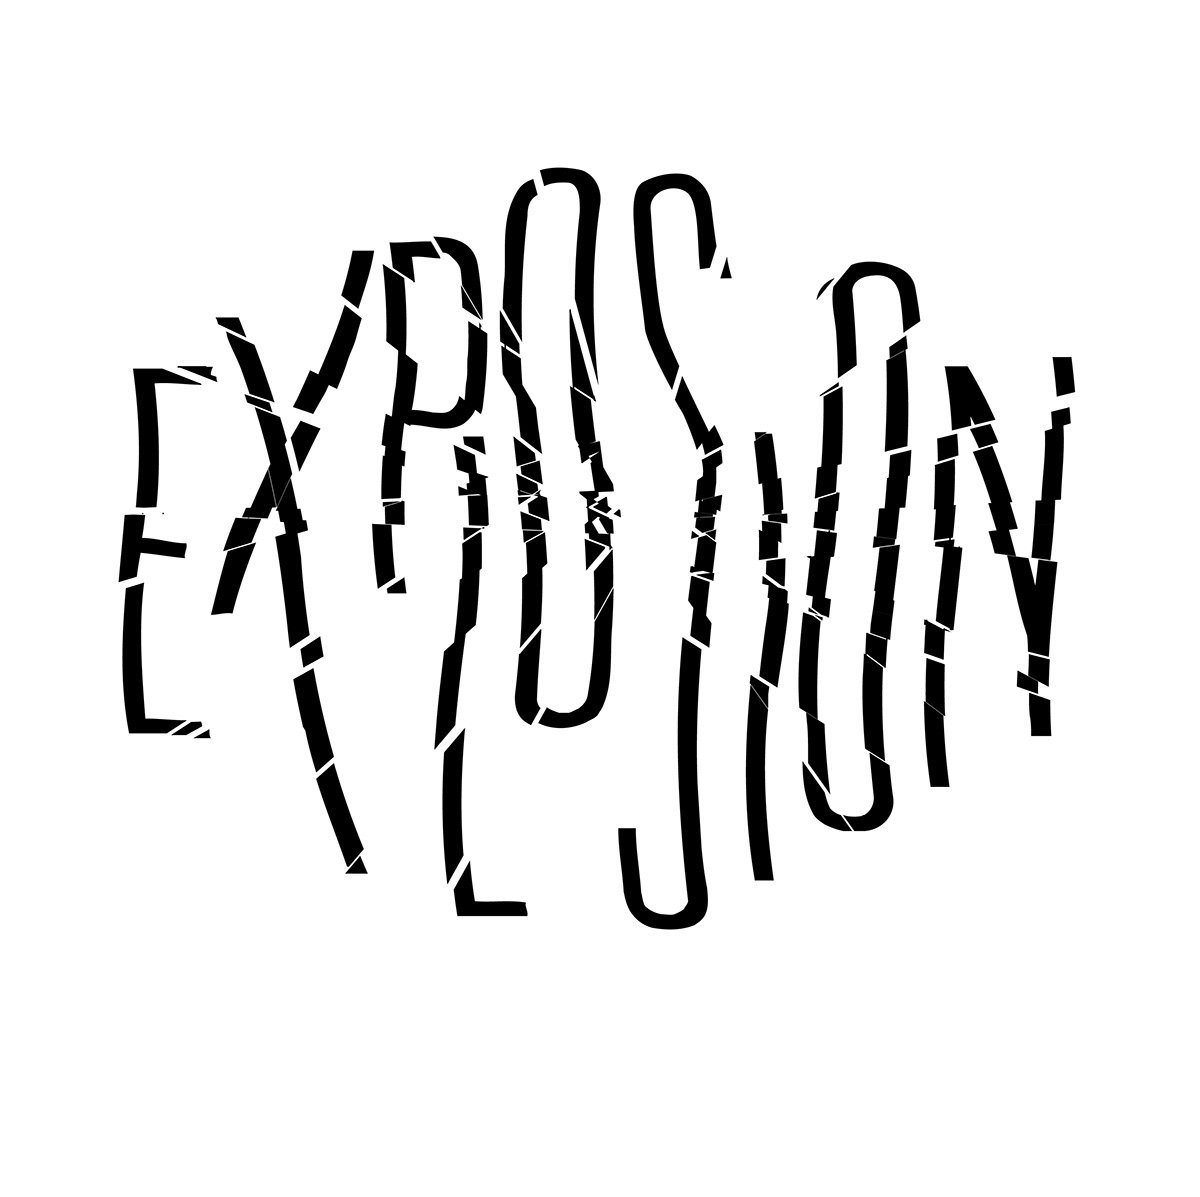 explosion typo album cover